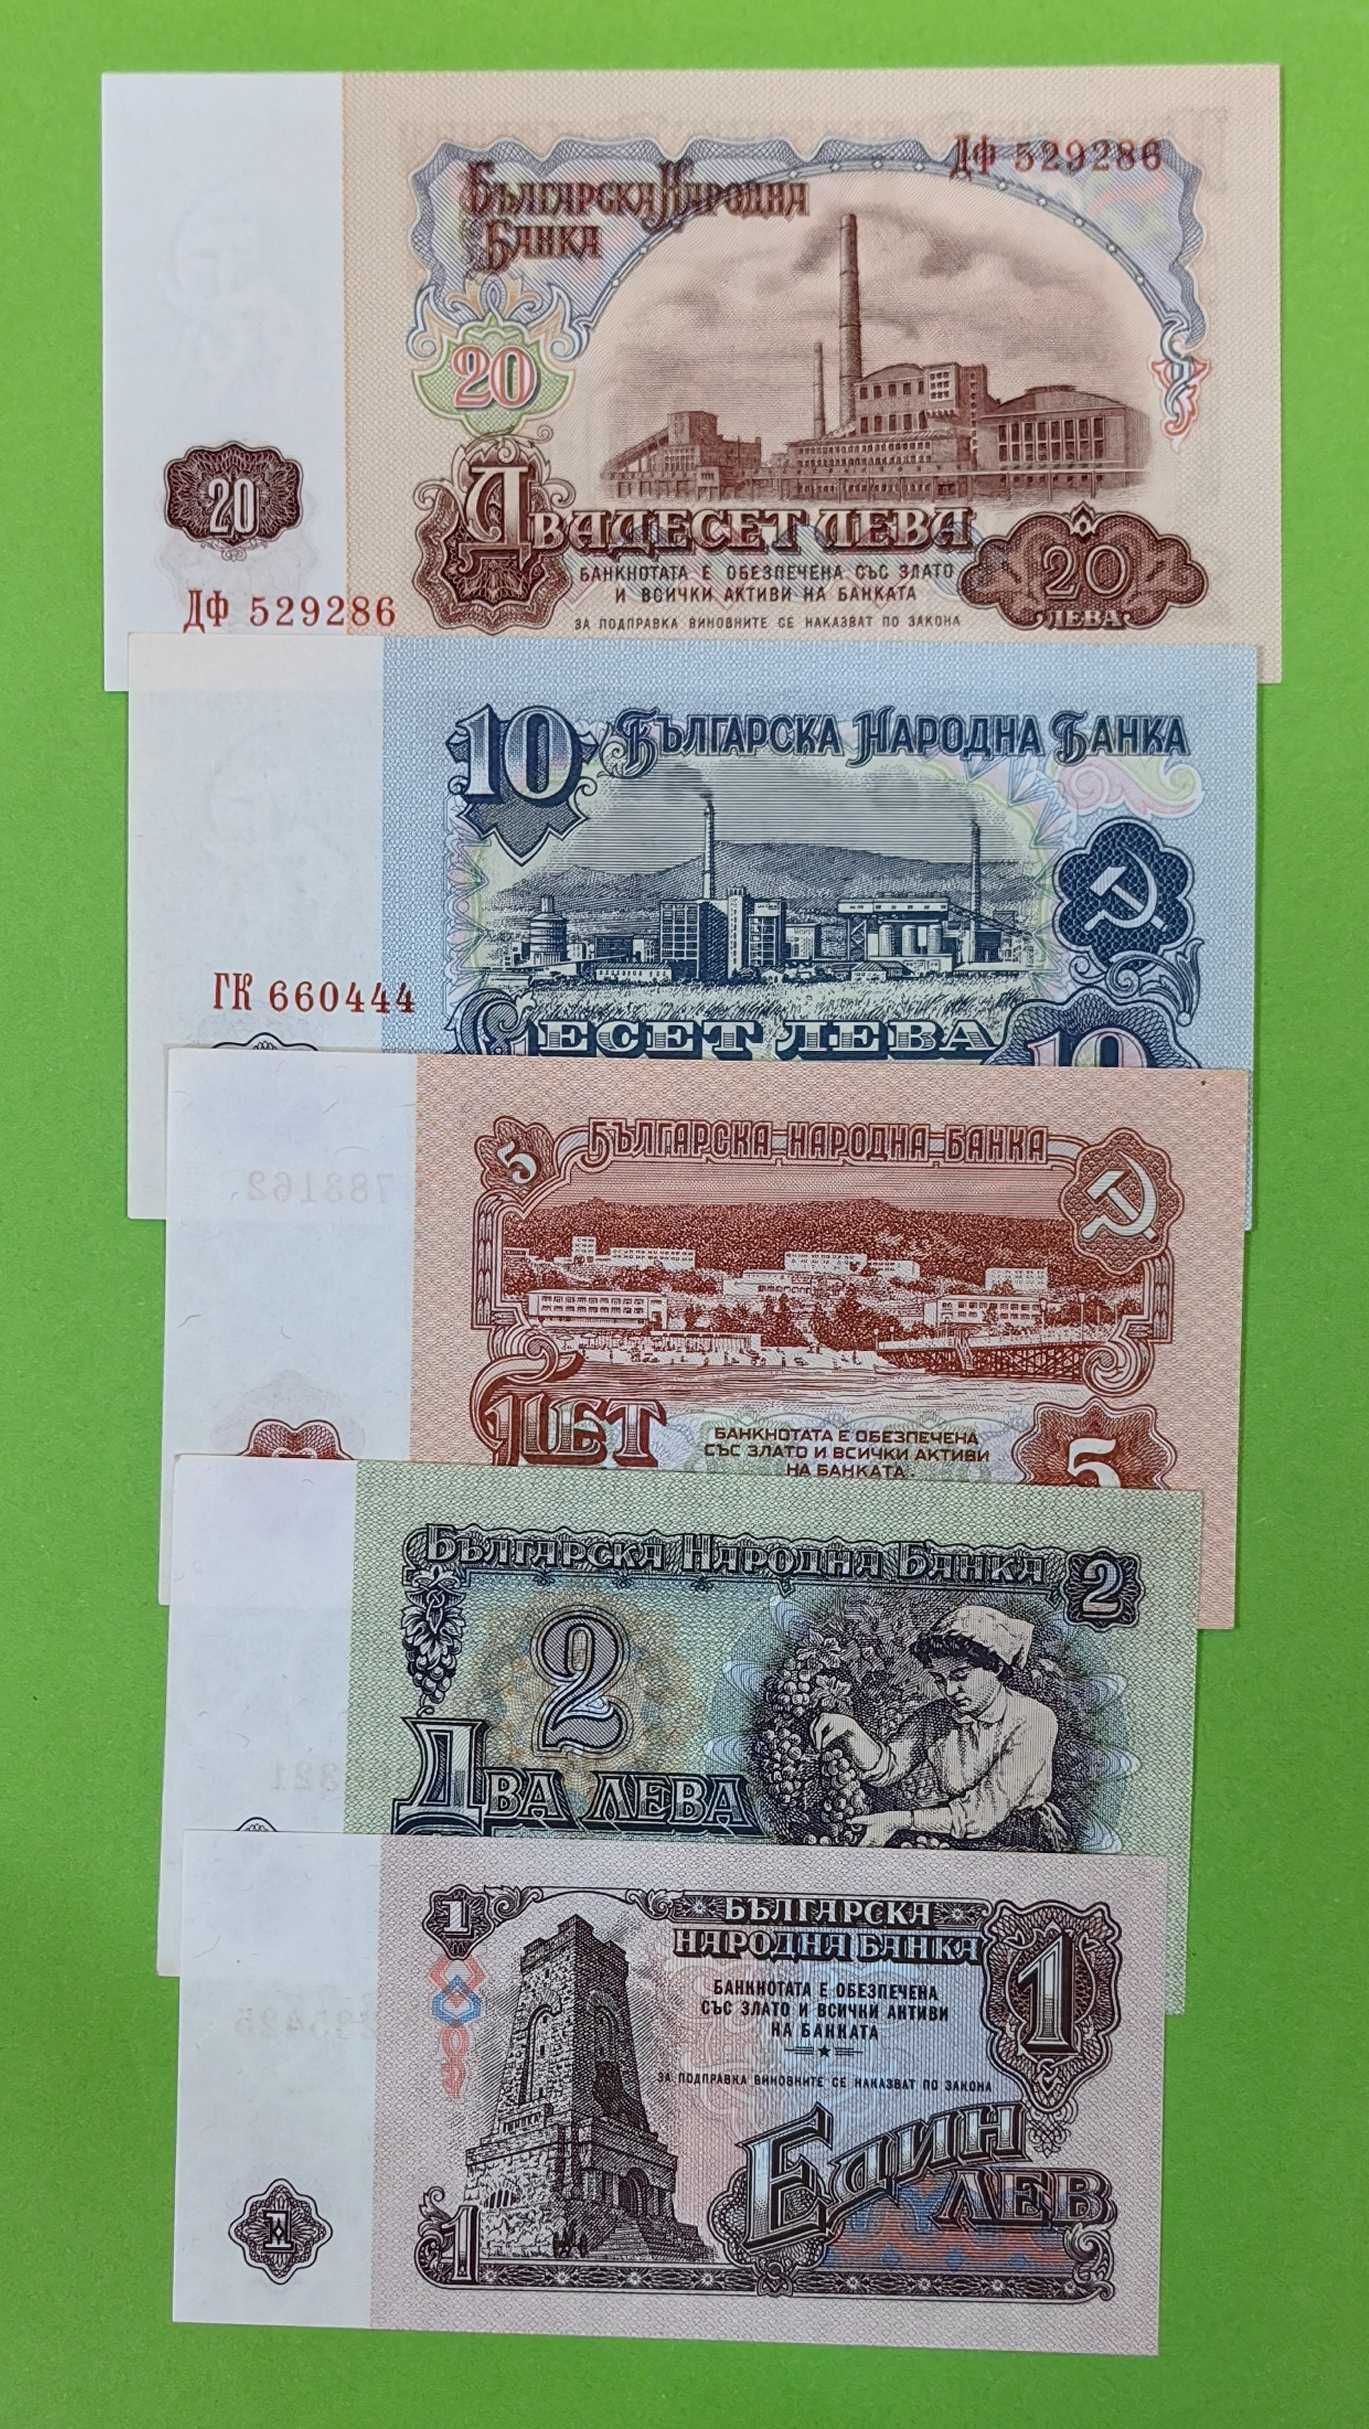 Пълен лот банкноти 1974 г. - с 6 цифрени серийни номера UNC